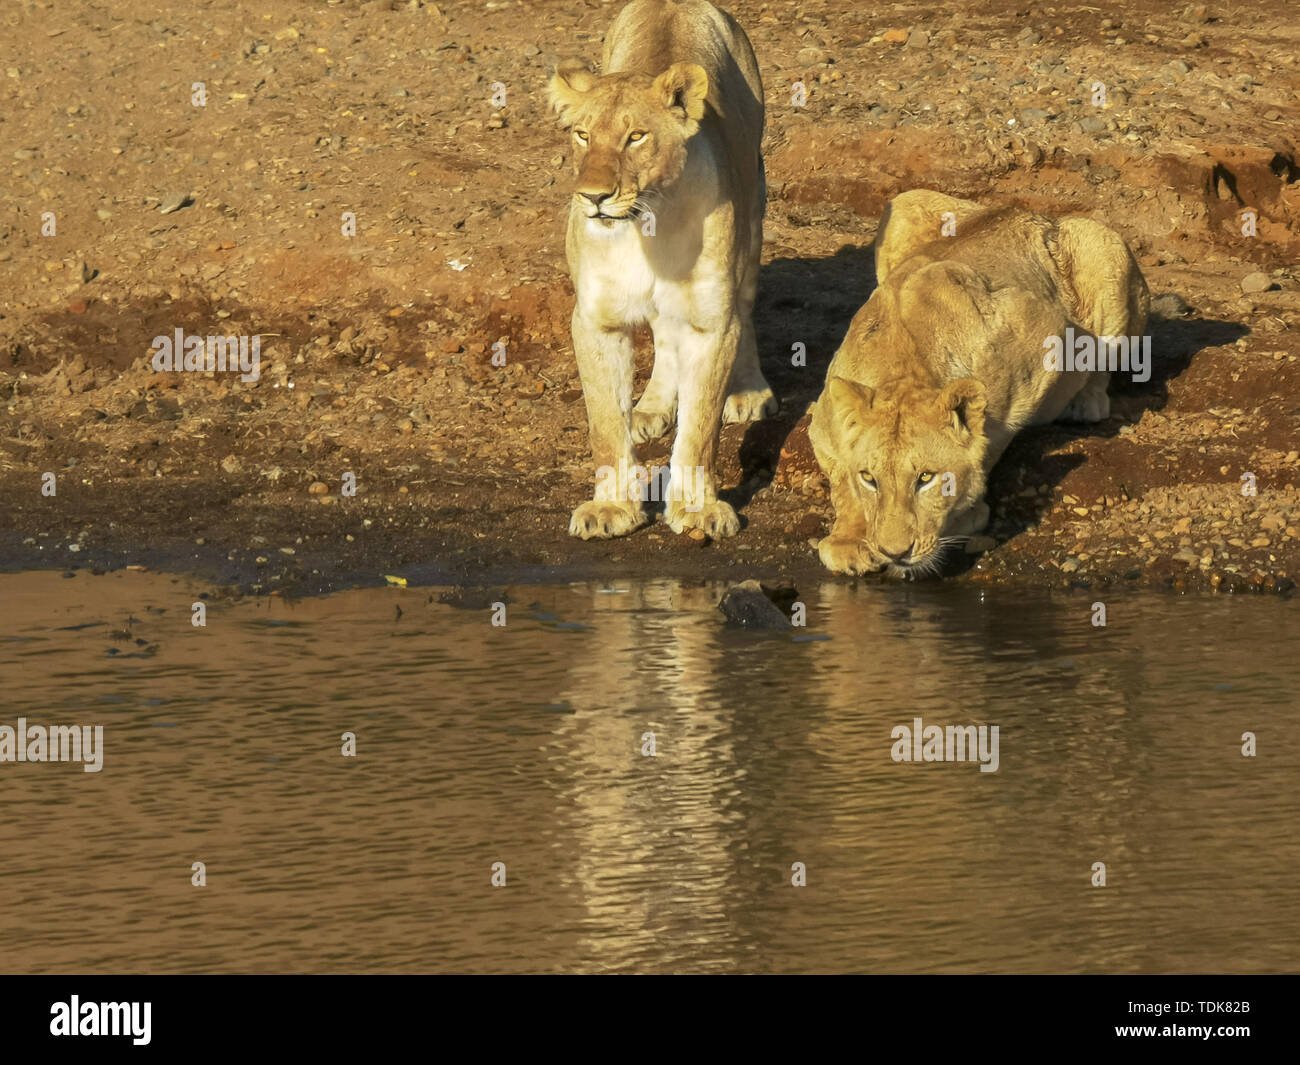 Лева попит. Лев пьет воду. Лев и львица пьет воду. Львица пьет воду. Львица пьет воду речки.